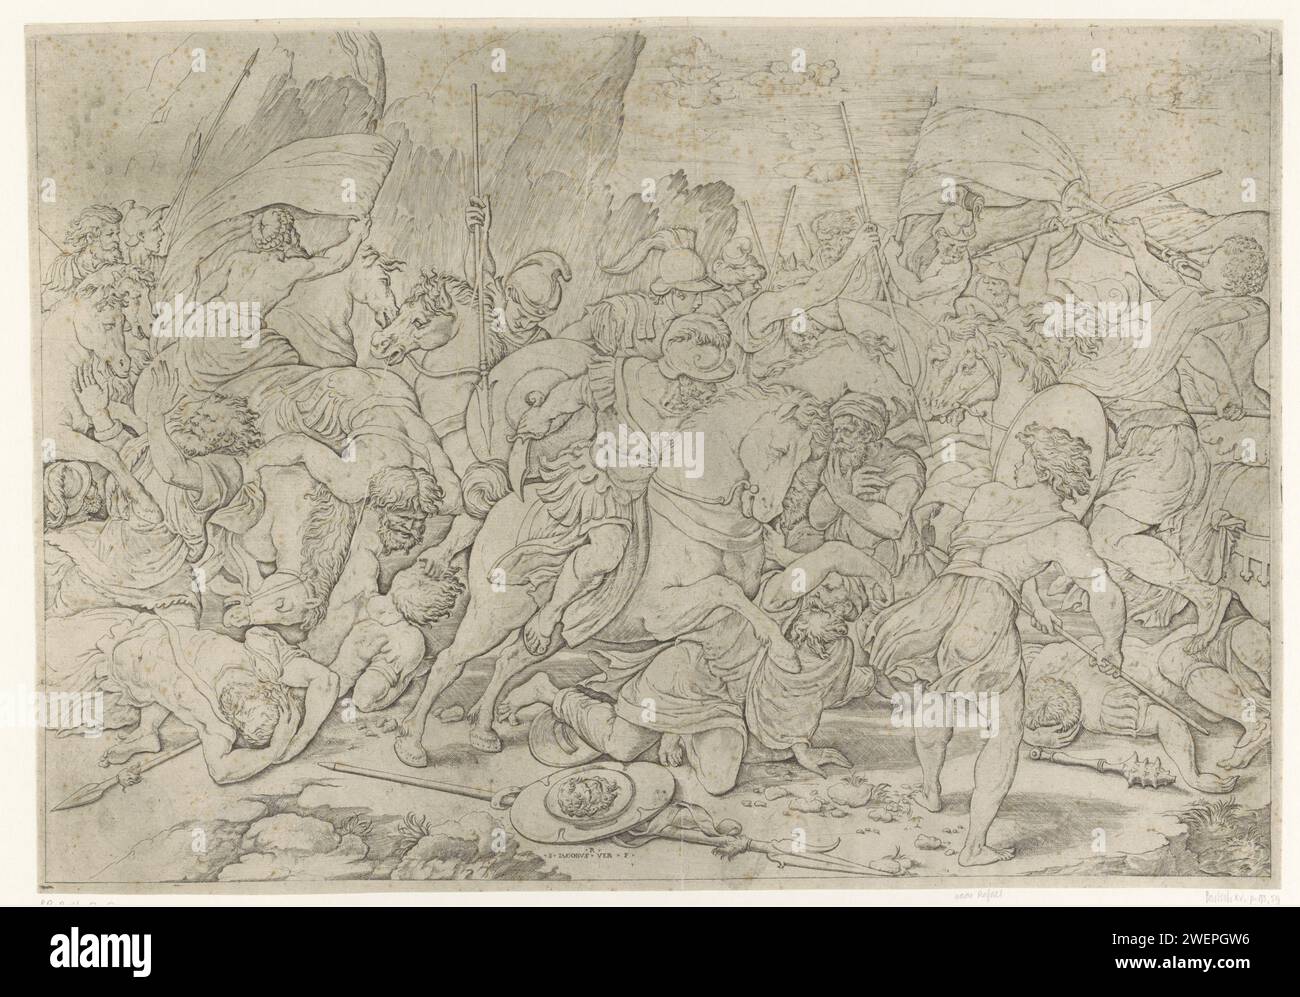 Kämpfen Sie mit Schilden und Lanzen, Giovanni Jacopo Caraglio, nach Rafaël, 1515 - 1565 drucken Soldaten zu Pferd und zu Fuß im Kampf mit Lanzen und Schilden. Vielleicht die Schlacht zwischen Römern und Barbaren. Kampf um Papiergravur Stockfoto